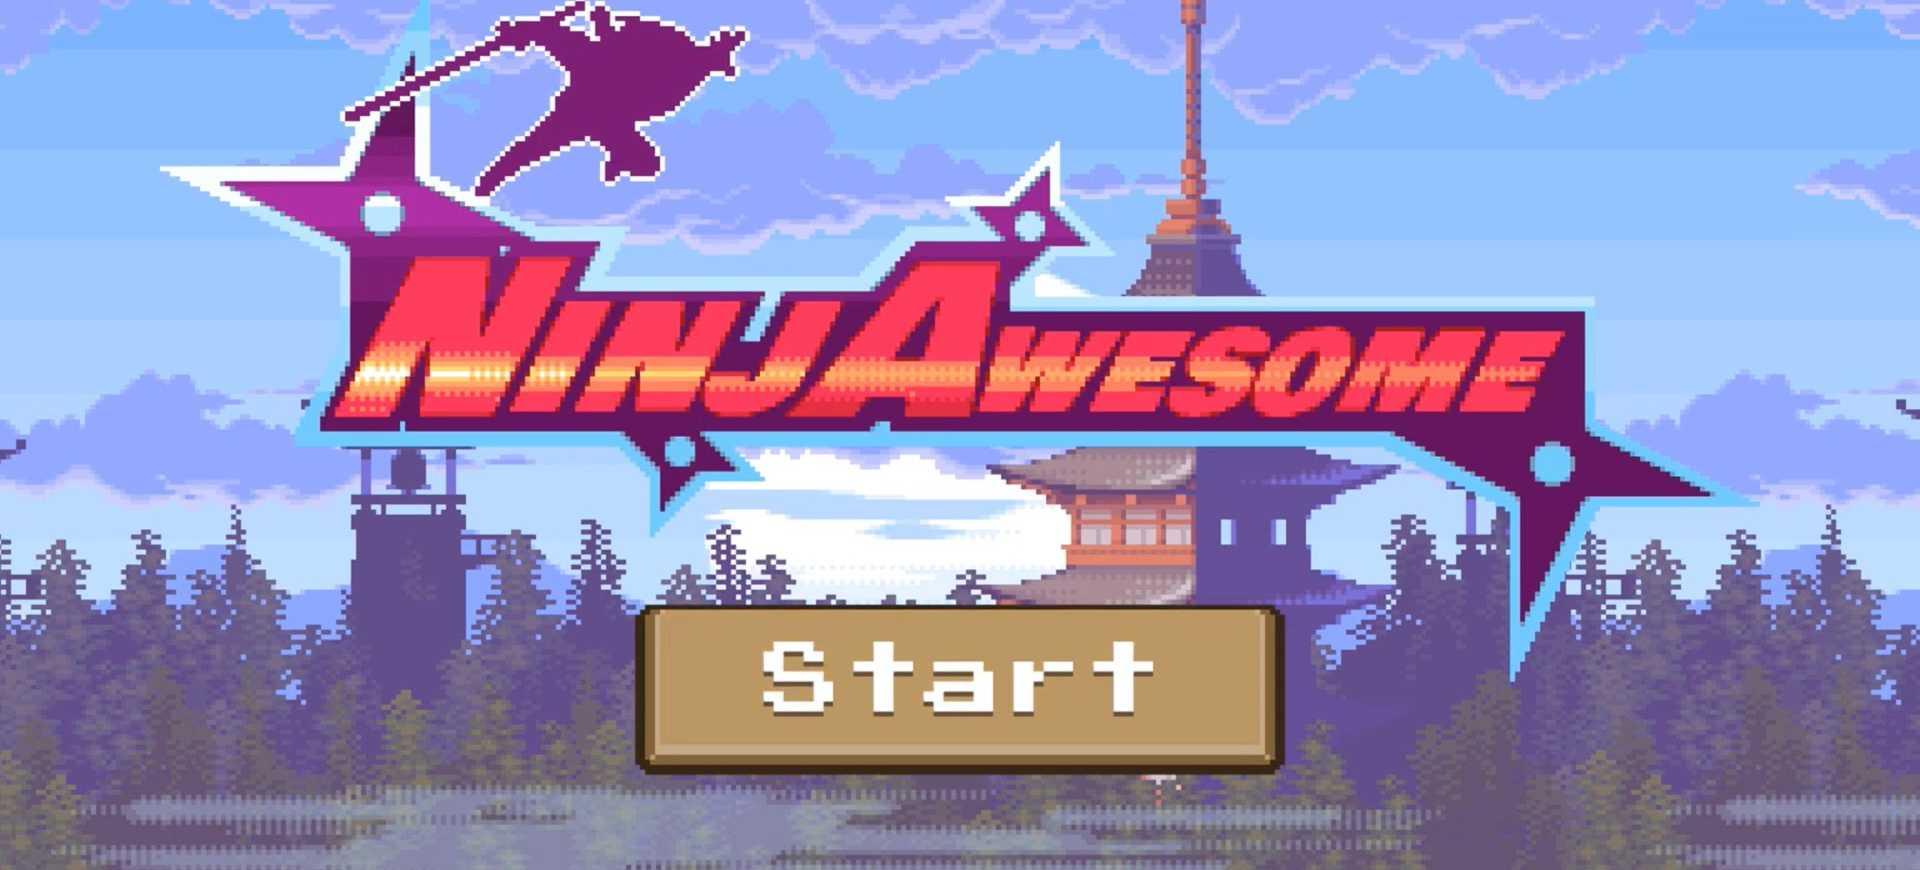 NinjAwesome - Game phiêu lưu cổ điển hấp dẫn sắp ra mắt - Tin Game Mobile